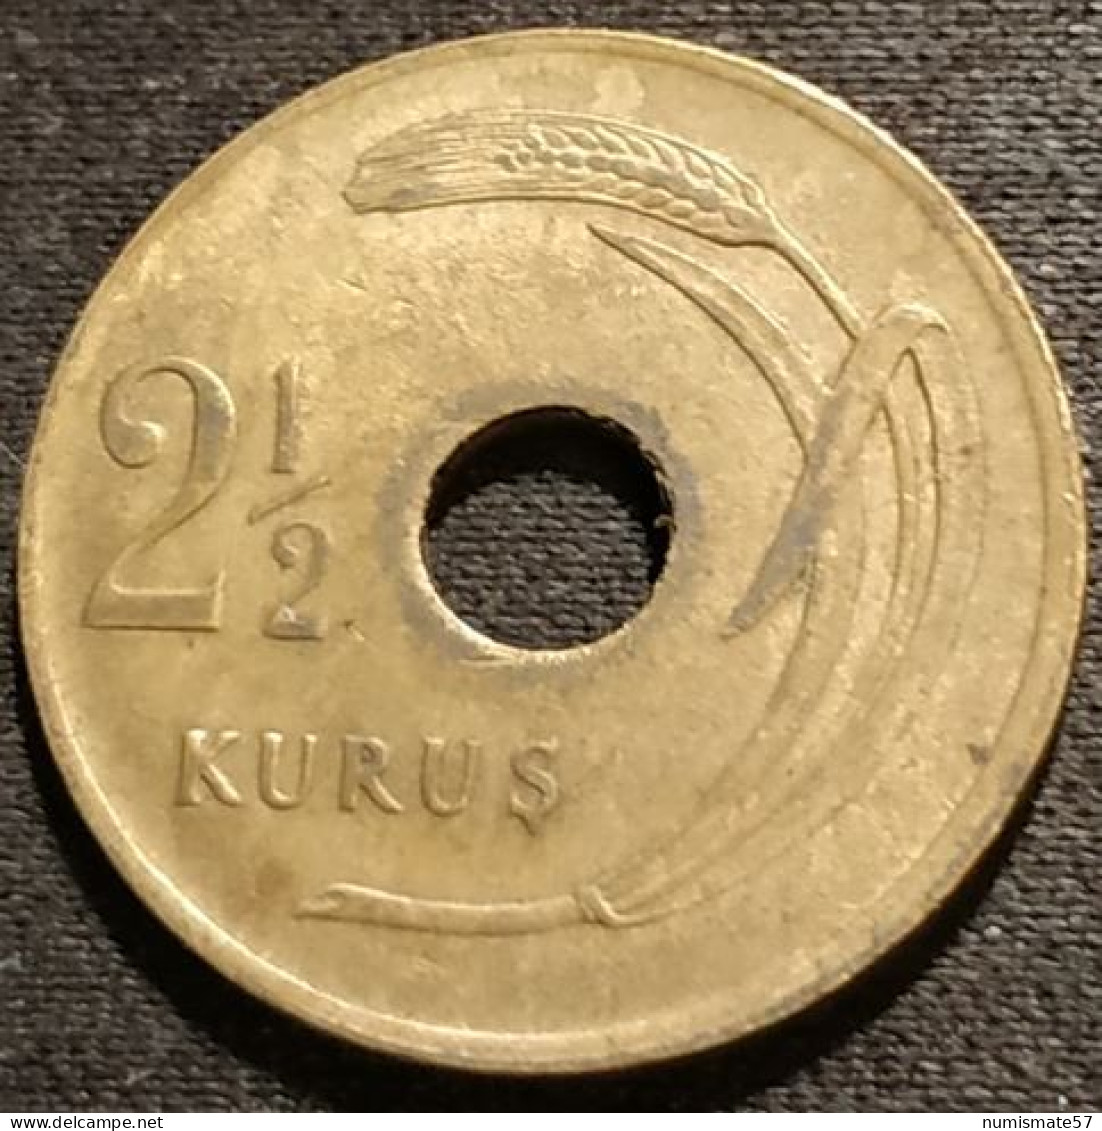 TURQUIE - TURKEY - 2 1/2 KURUS 1948 - KM 885 - ( 2½ Kuruş ) - Turkey